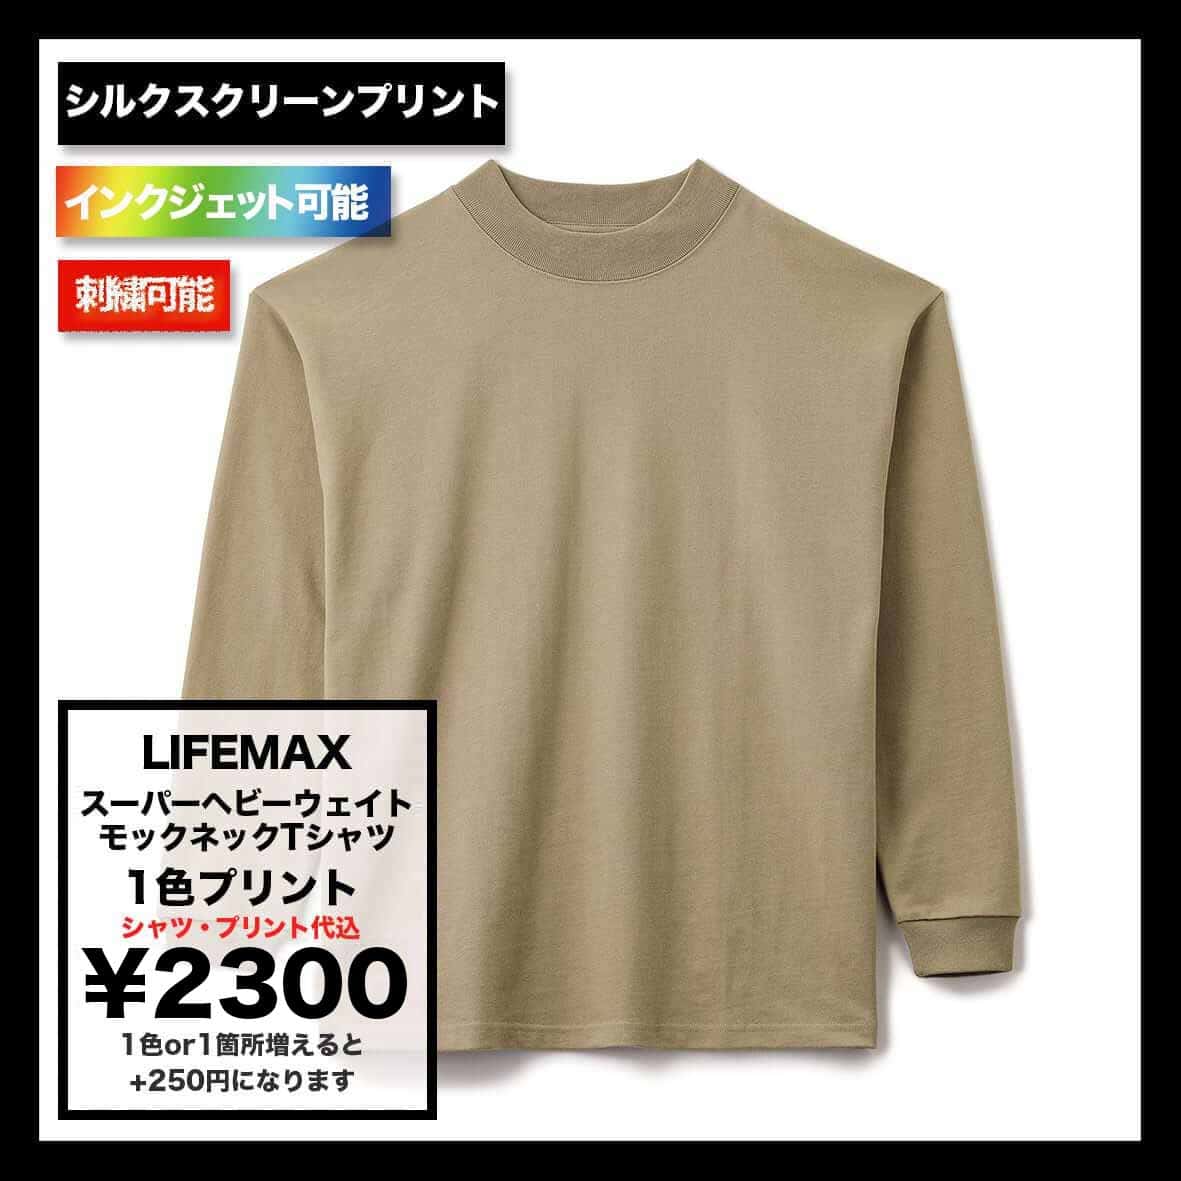 LIFEMAX ライフマックス 10.2 oz スーパーヘビーウェイトモックネックTシャツ (品番MS1610)